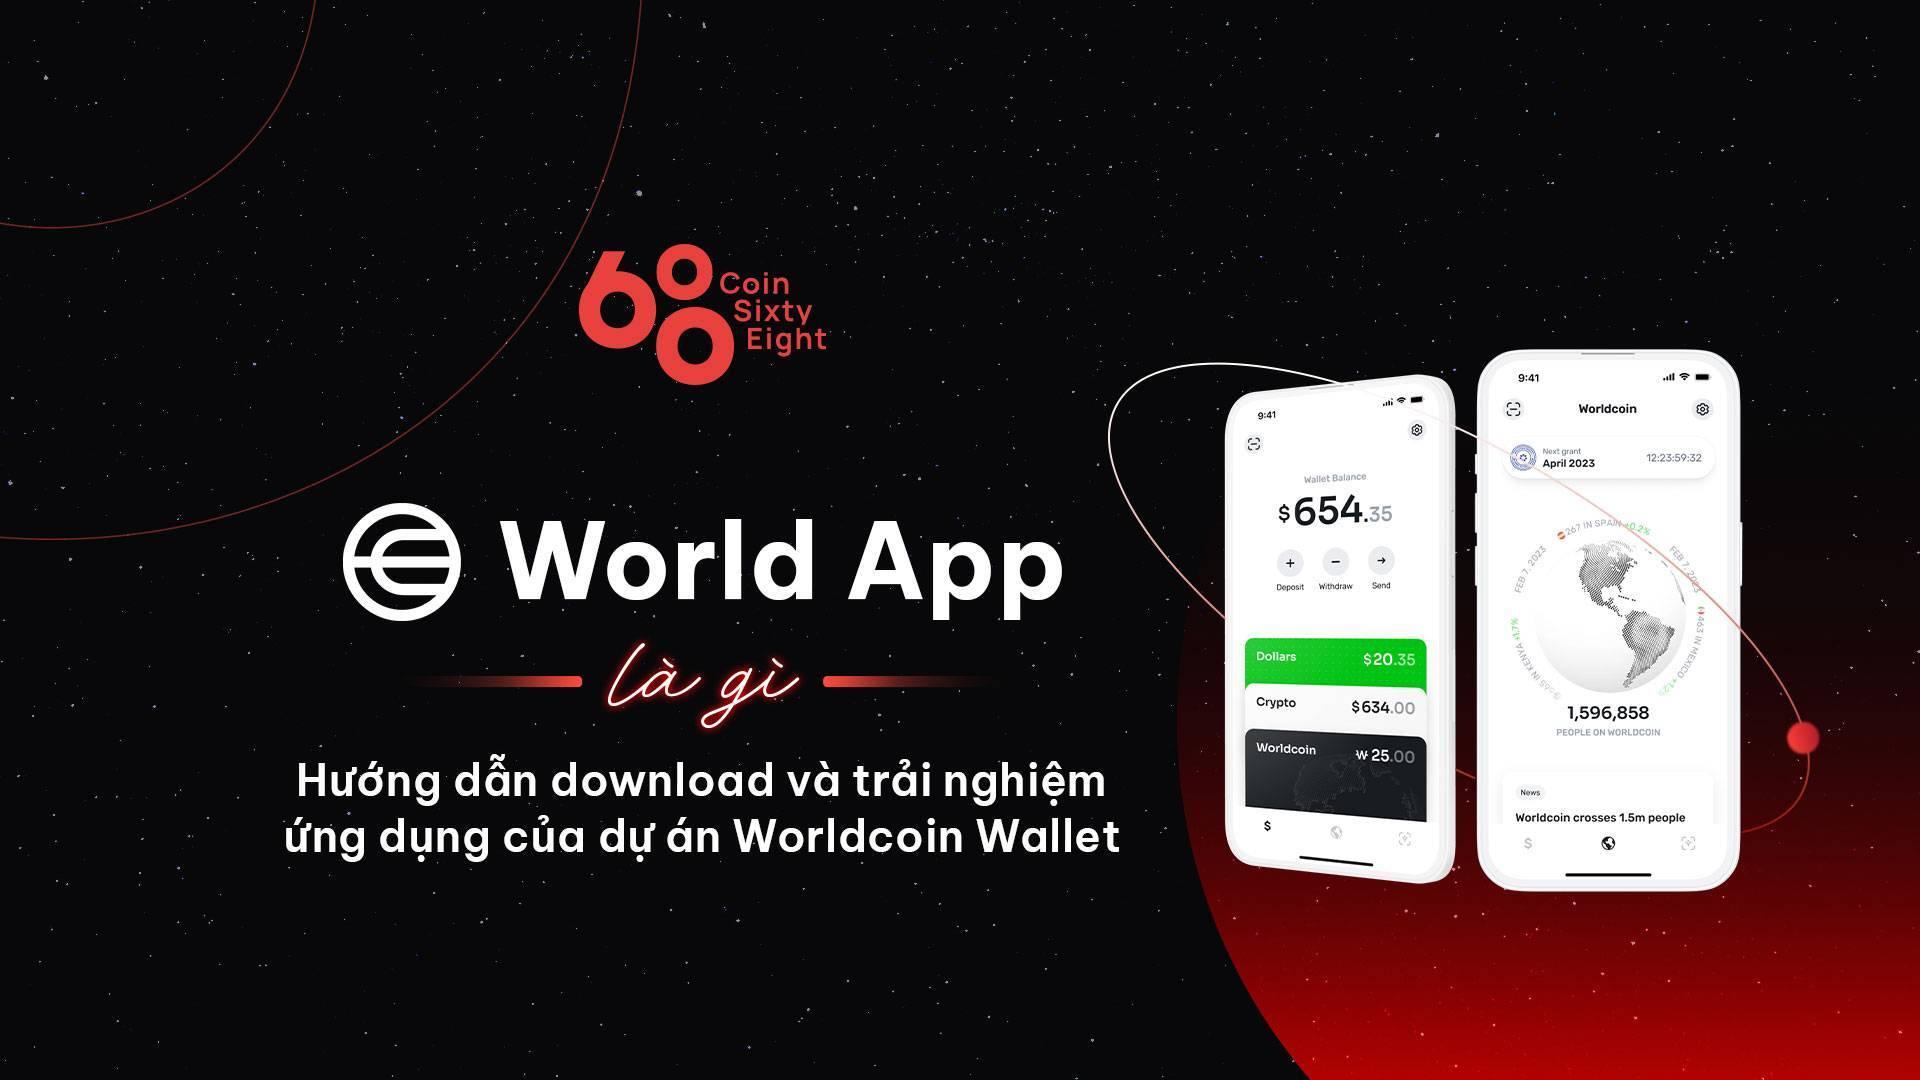 world-app-la-gi-huong-dan-download-va-trai-nghiem-ung-dung-cua-du-an-worldcoin